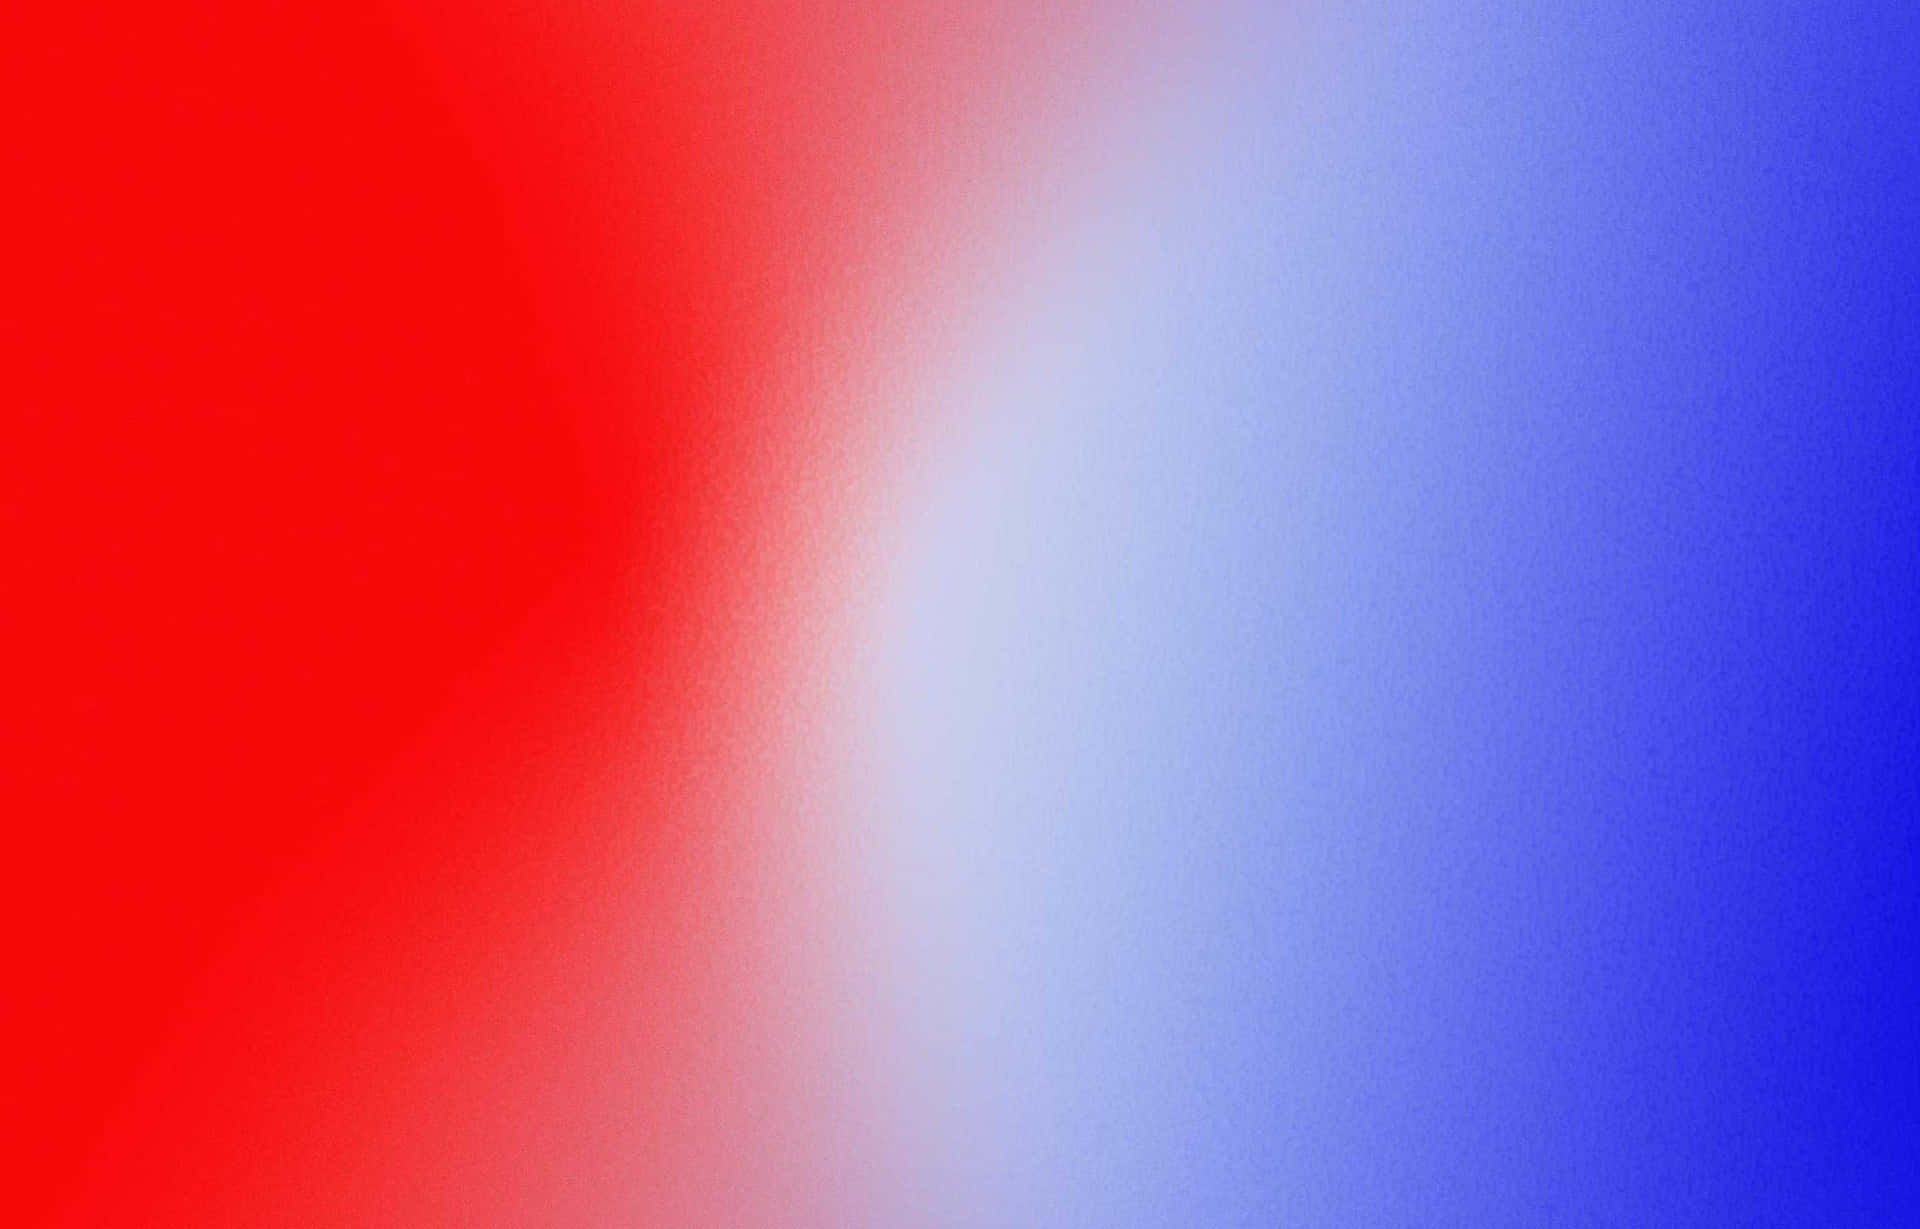 Einhintergrund In Rot, Blau Und Weiß Mit Einem Farbverlauf.